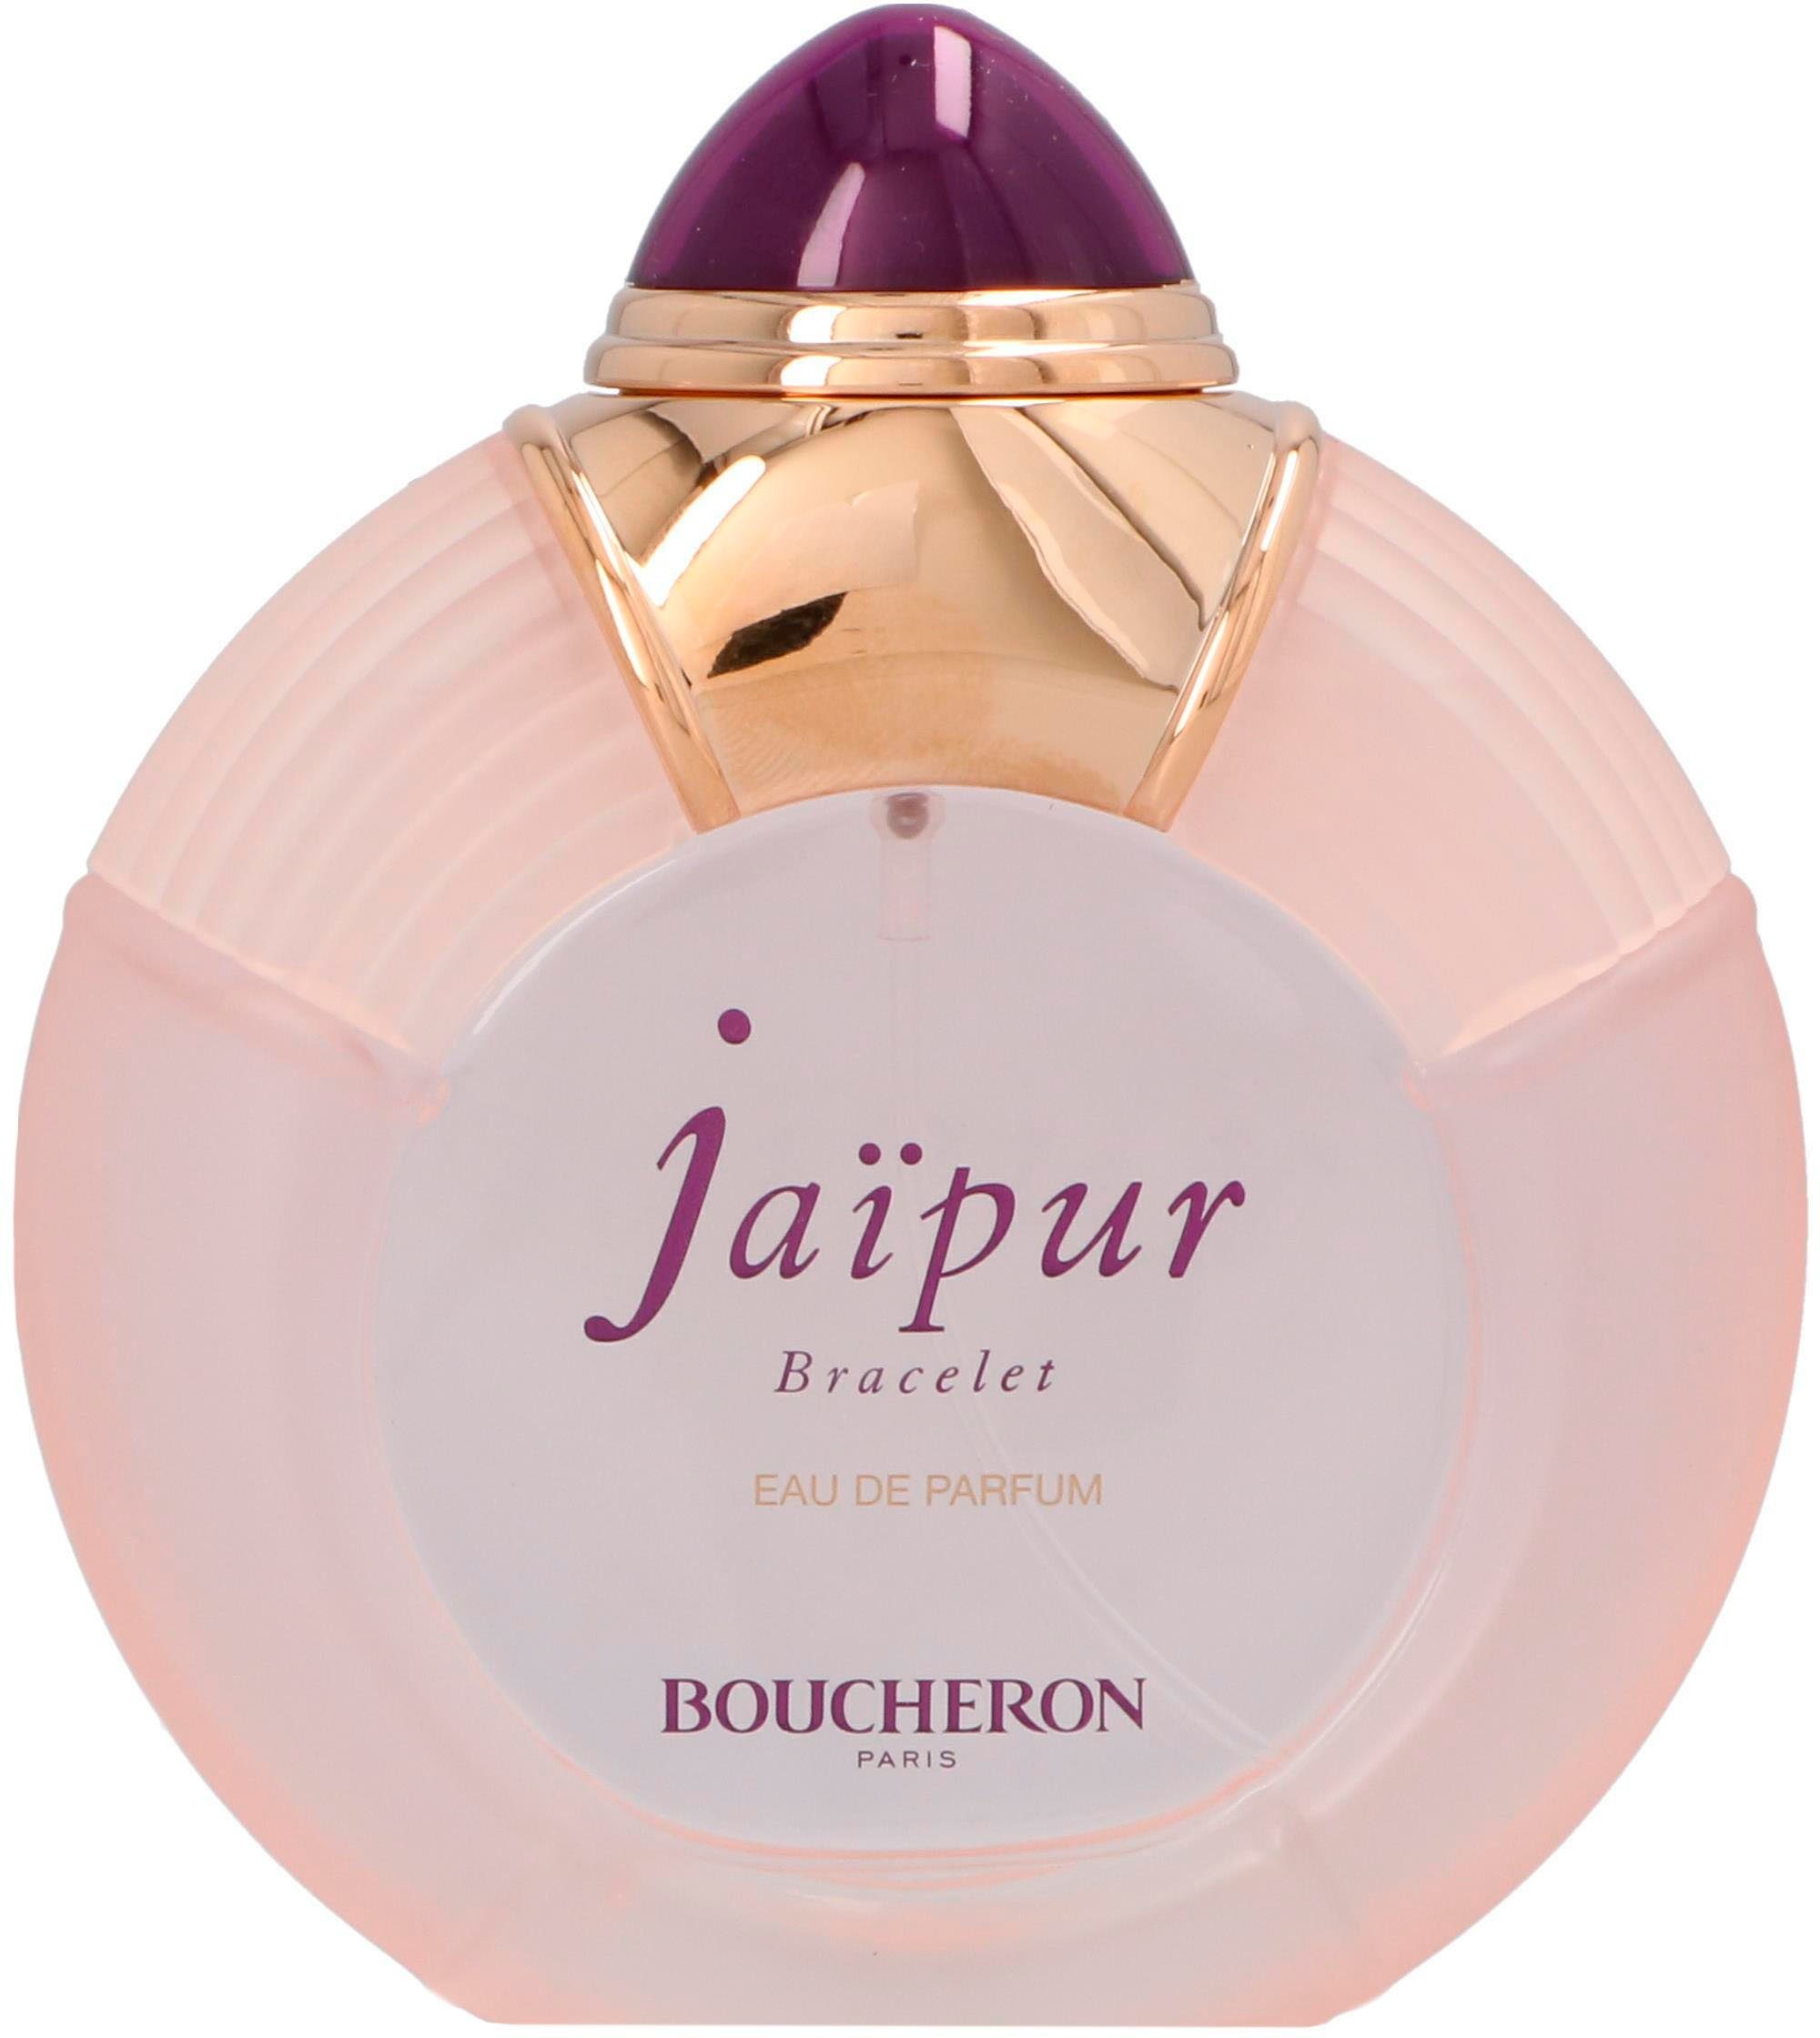 BOUCHERON Eau de Parfum Jaipur Bracelet | Eau de Parfum